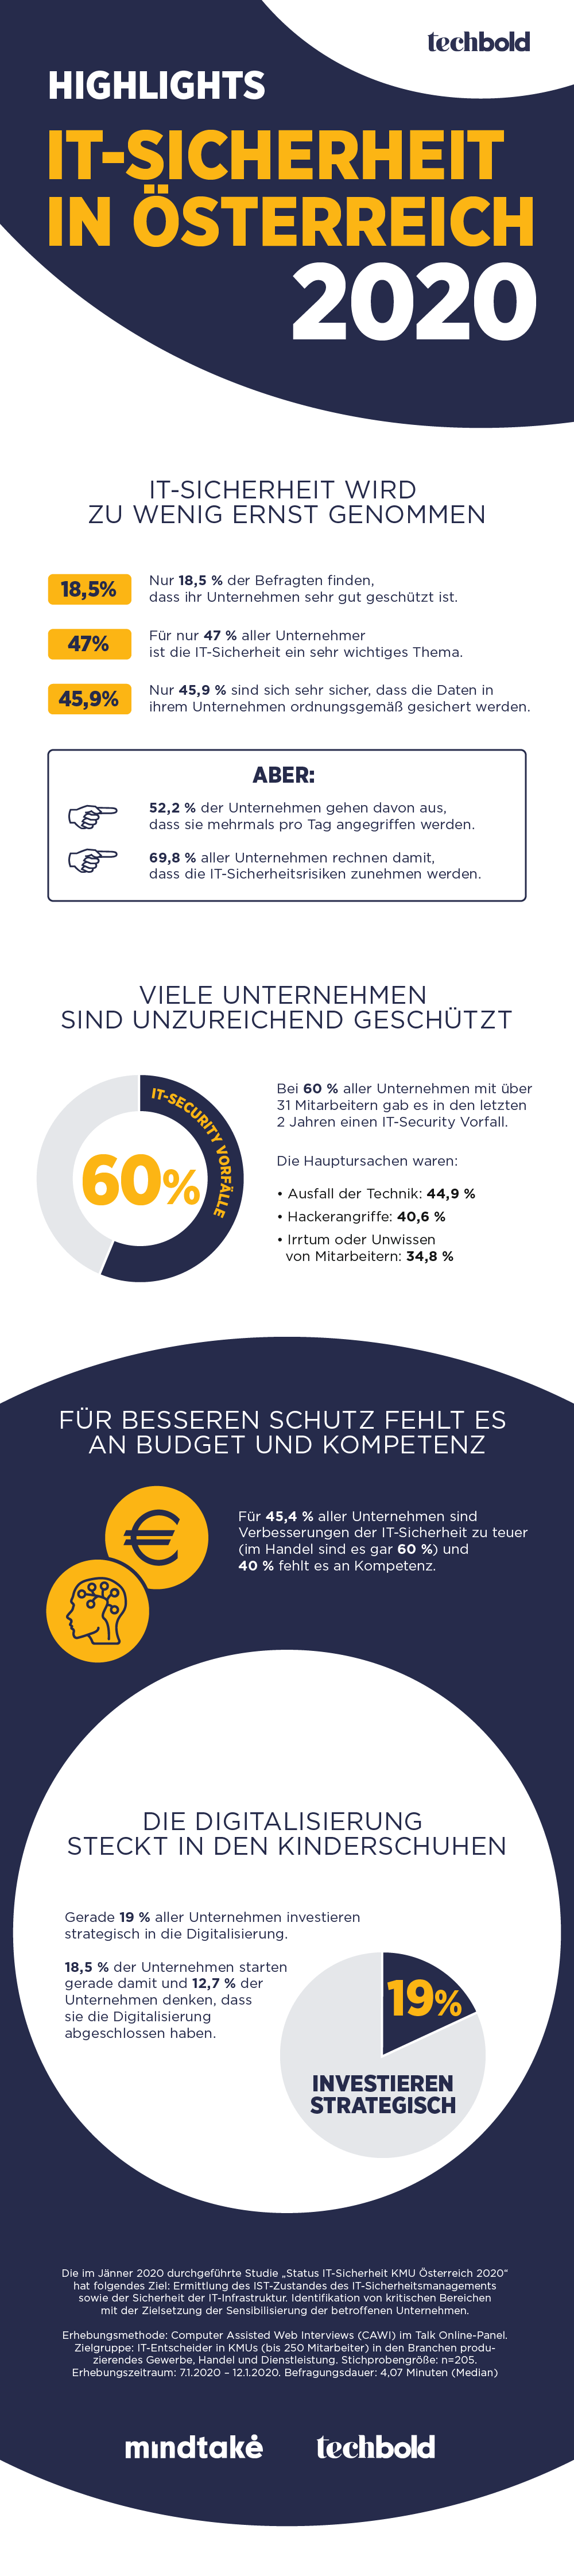 Infografik: Highlights Studie IT-Sicherheit KMU Österreich 2020